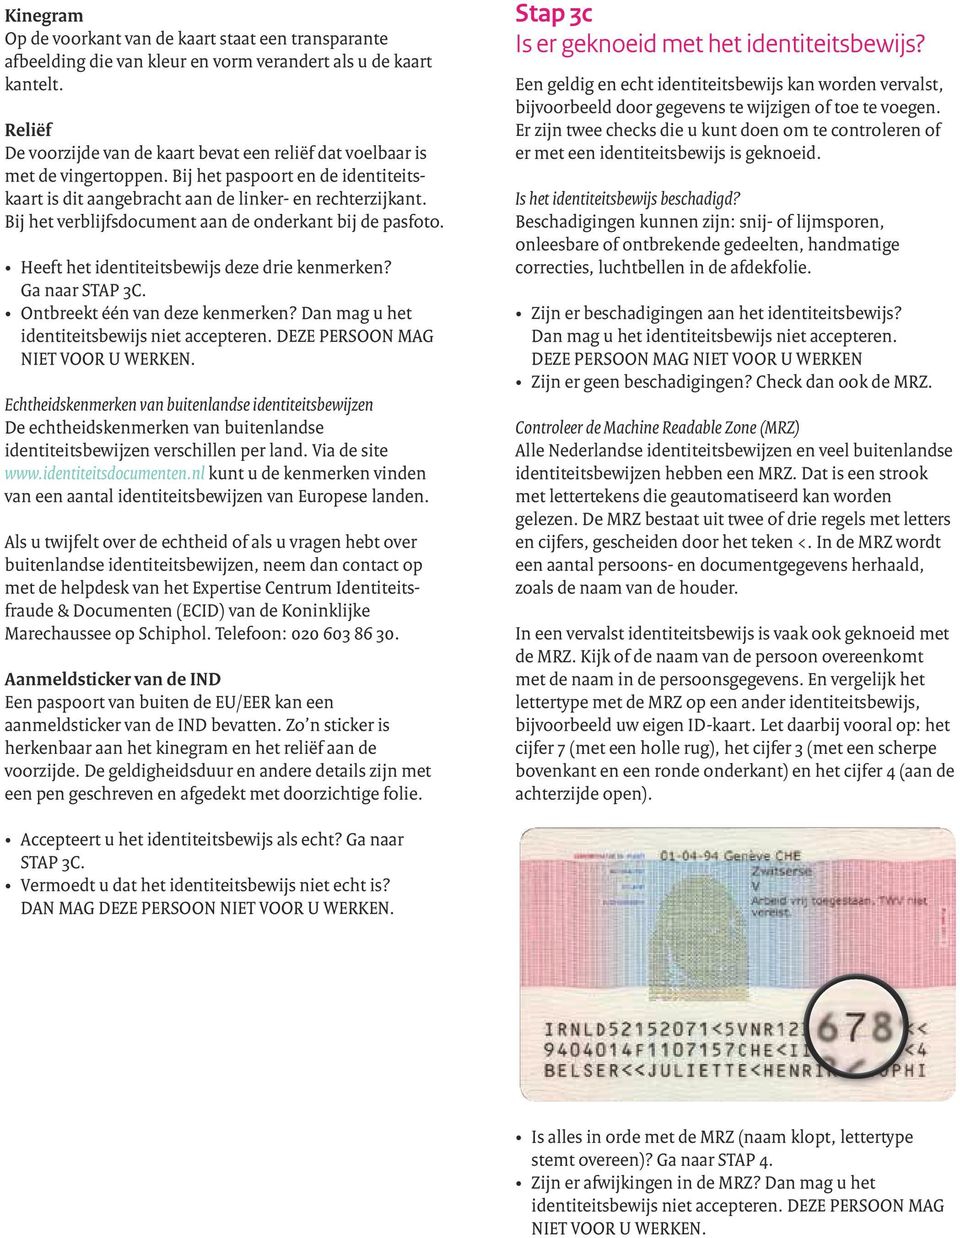 Bij het verblijfsdocument aan de onderkant bij de pasfoto. Heeft het identiteitsbewijs deze drie kenmerken? Ga naar STAP 3C. Ontbreekt één van deze kenmerken?